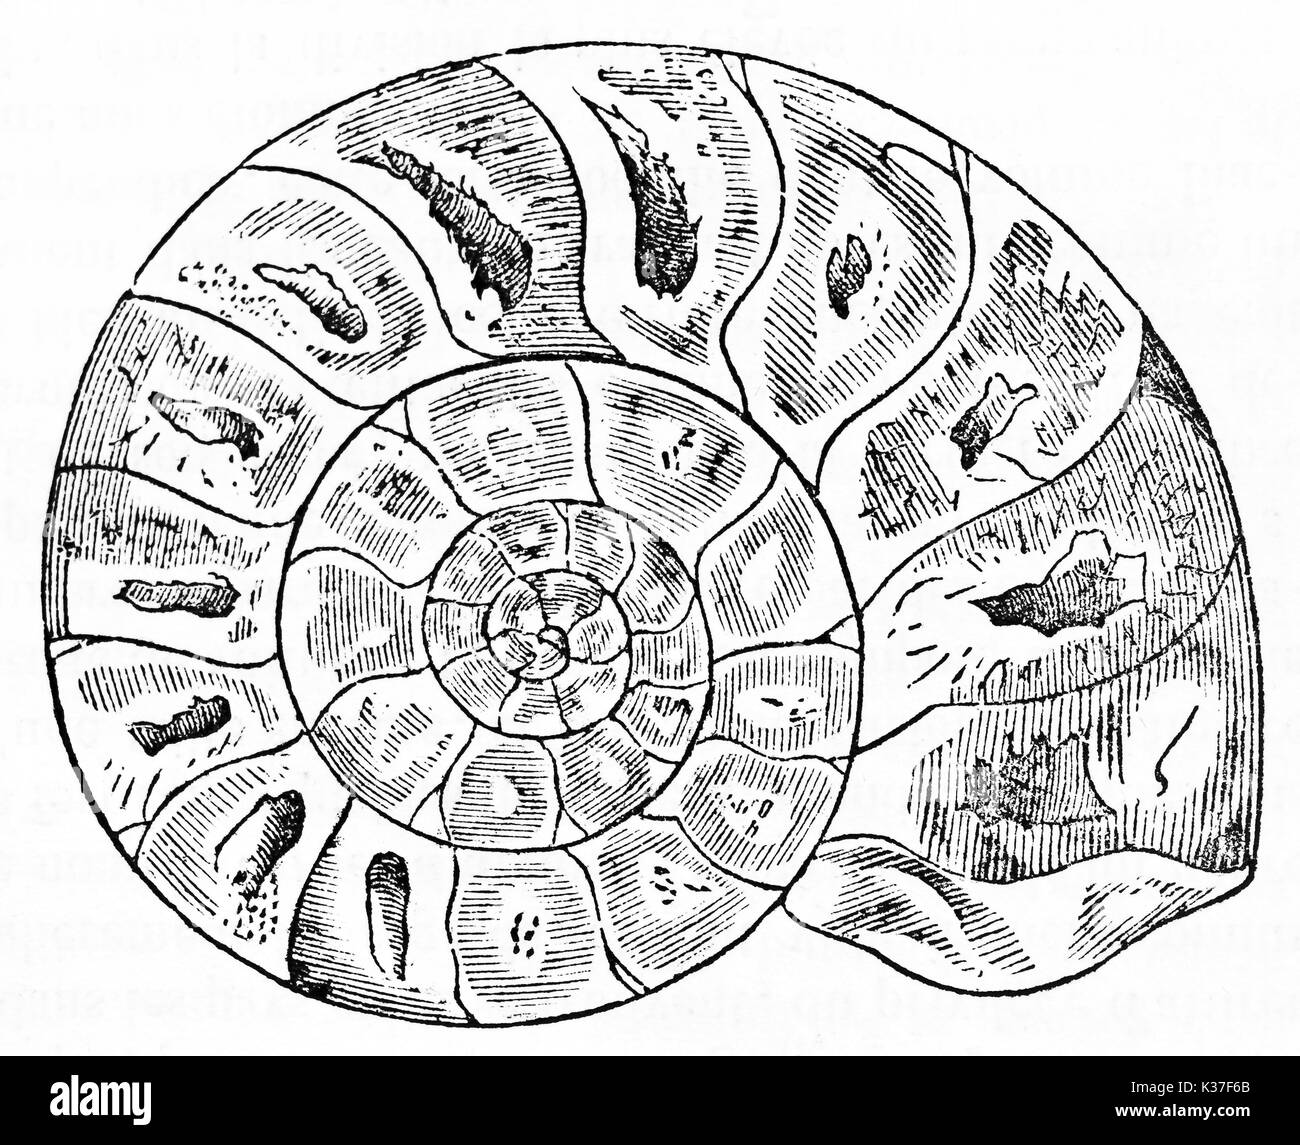 Alte Ammonit fossil in einem minimalen grafischen Stil dargestellt und isoliert. Alte Illustration von unbekannter Autor auf Magasin Pittoresque Paris 1834 veröffentlicht. Stockfoto